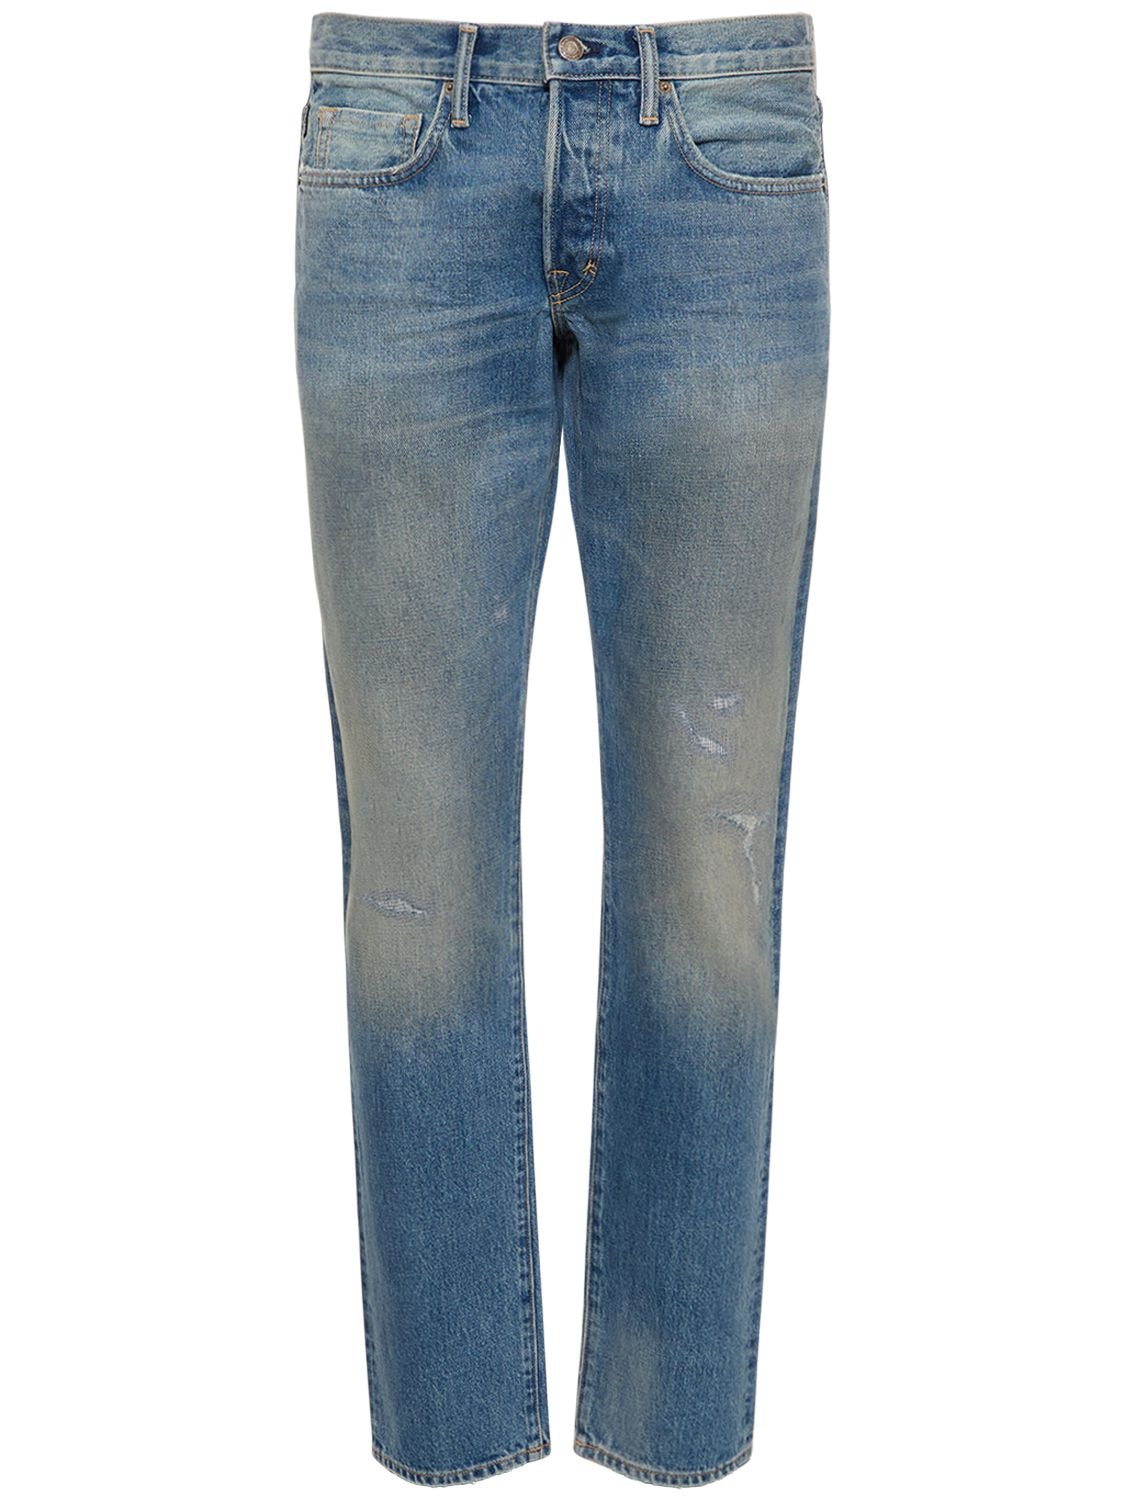 Jeans Slim Fit In Denim - TOM FORD - Modalova